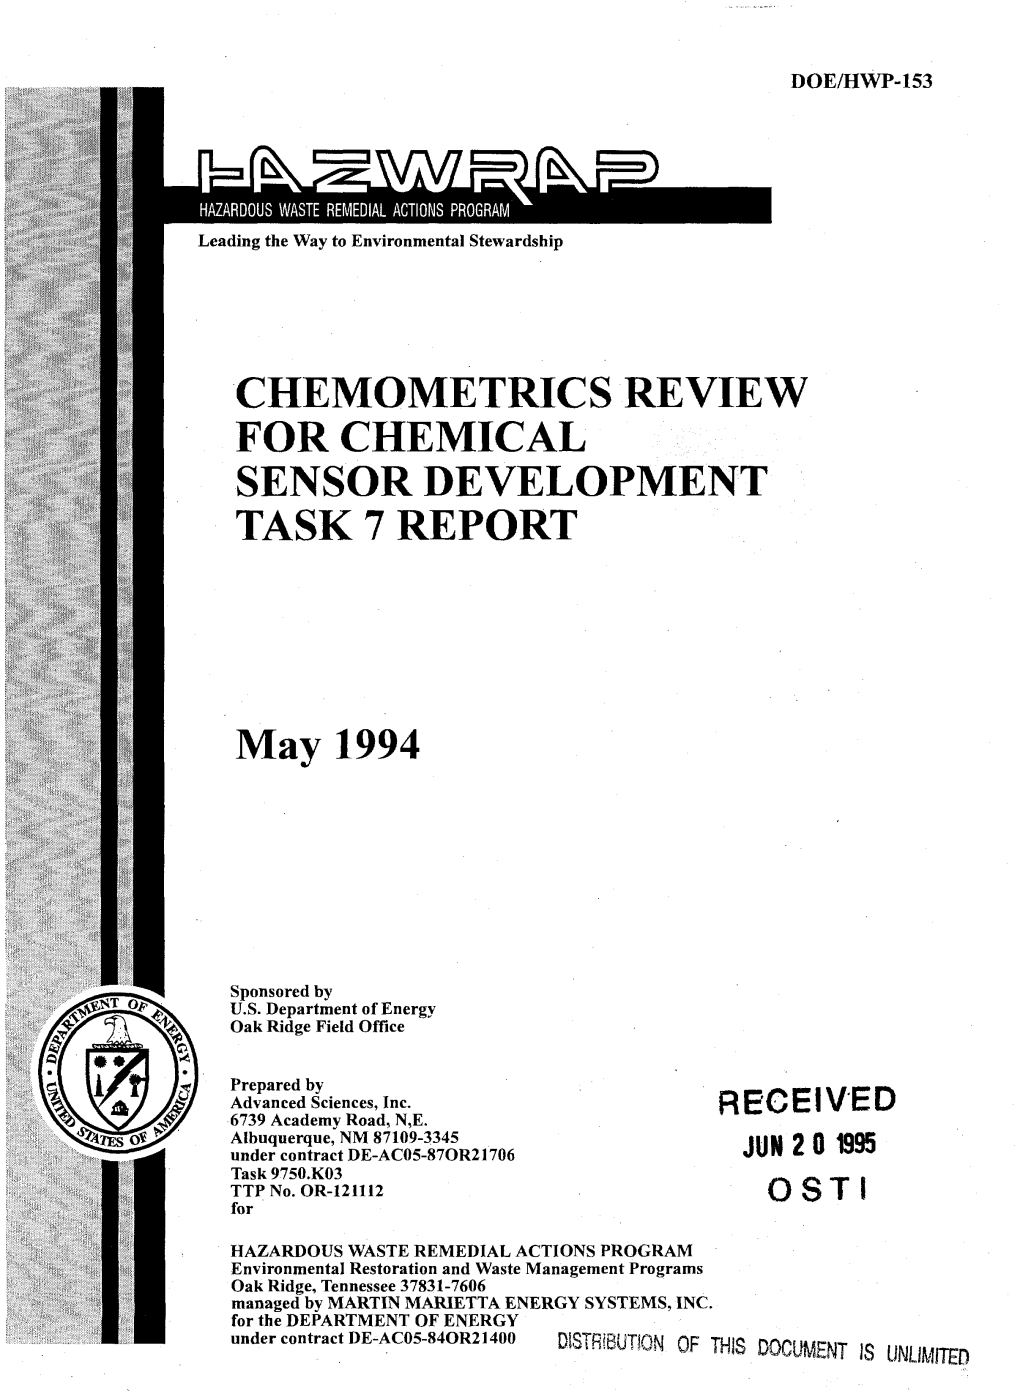 Chemometrics Review for Chemical Sensor Development Task 7 Report